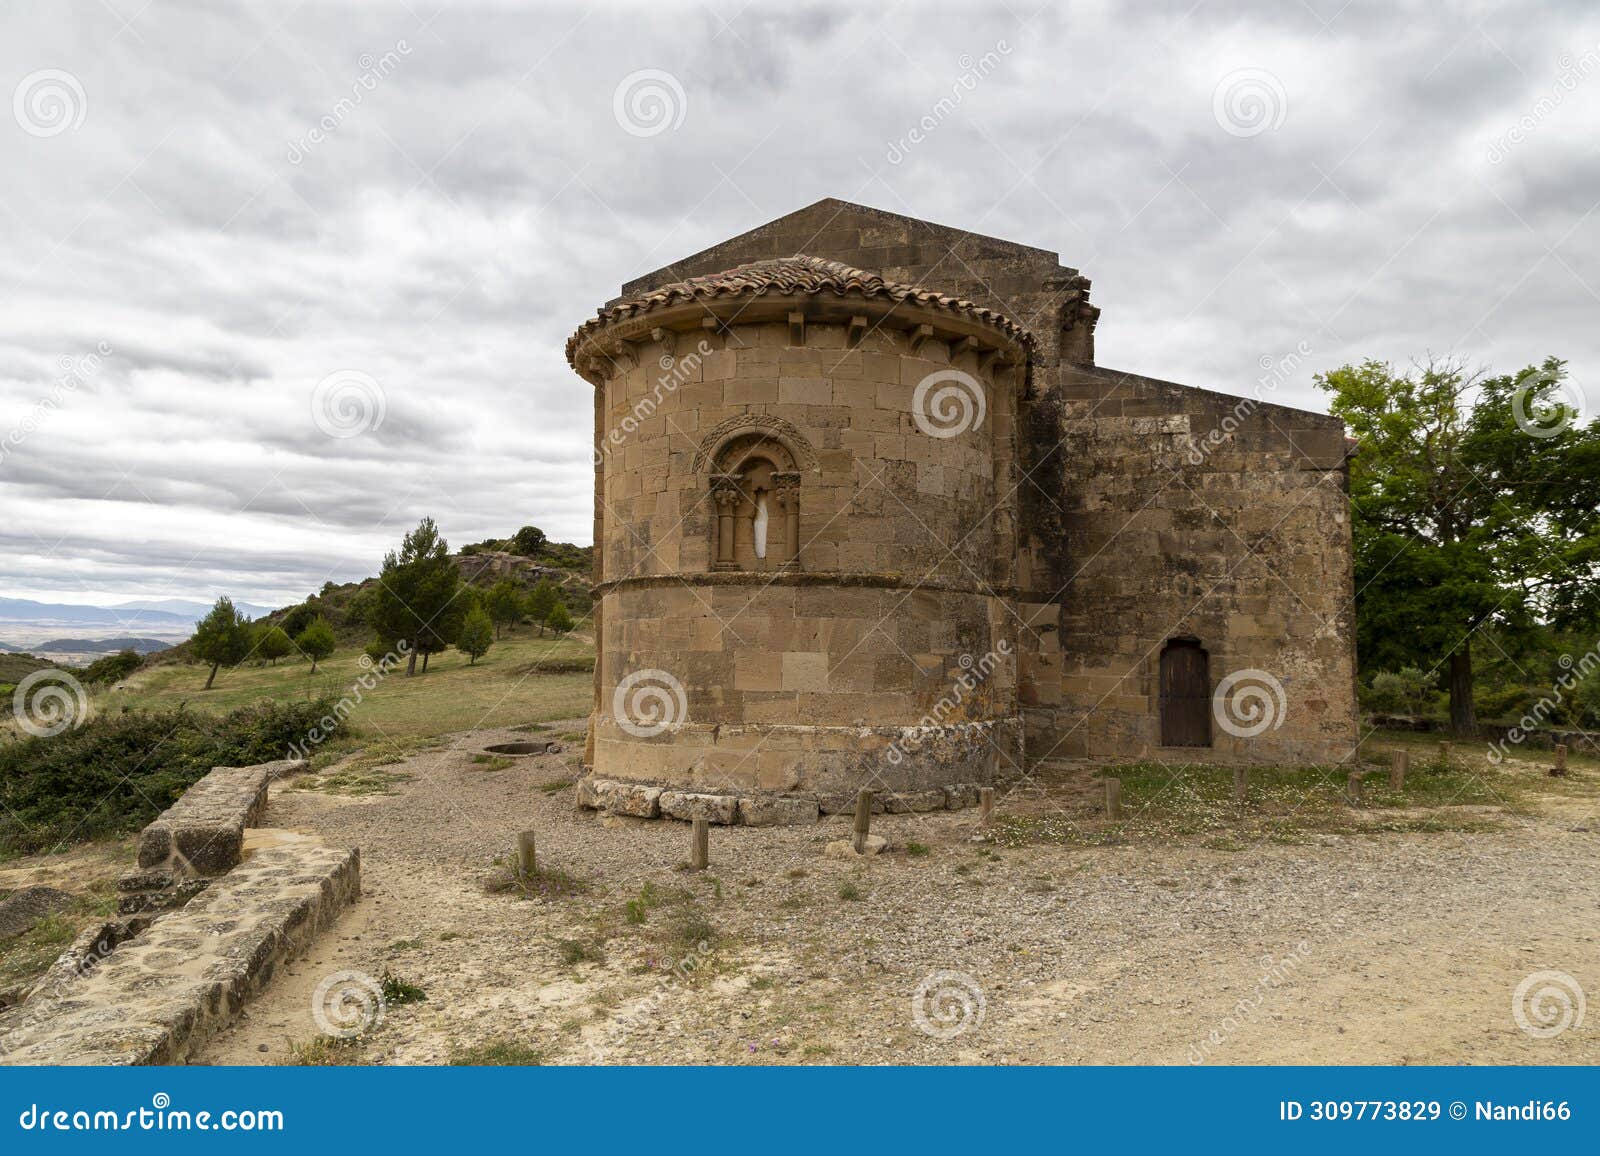 apse of the romanesque hermitage of santa maria de la piscina (12th century). san vicente de la sonsierra, spain.